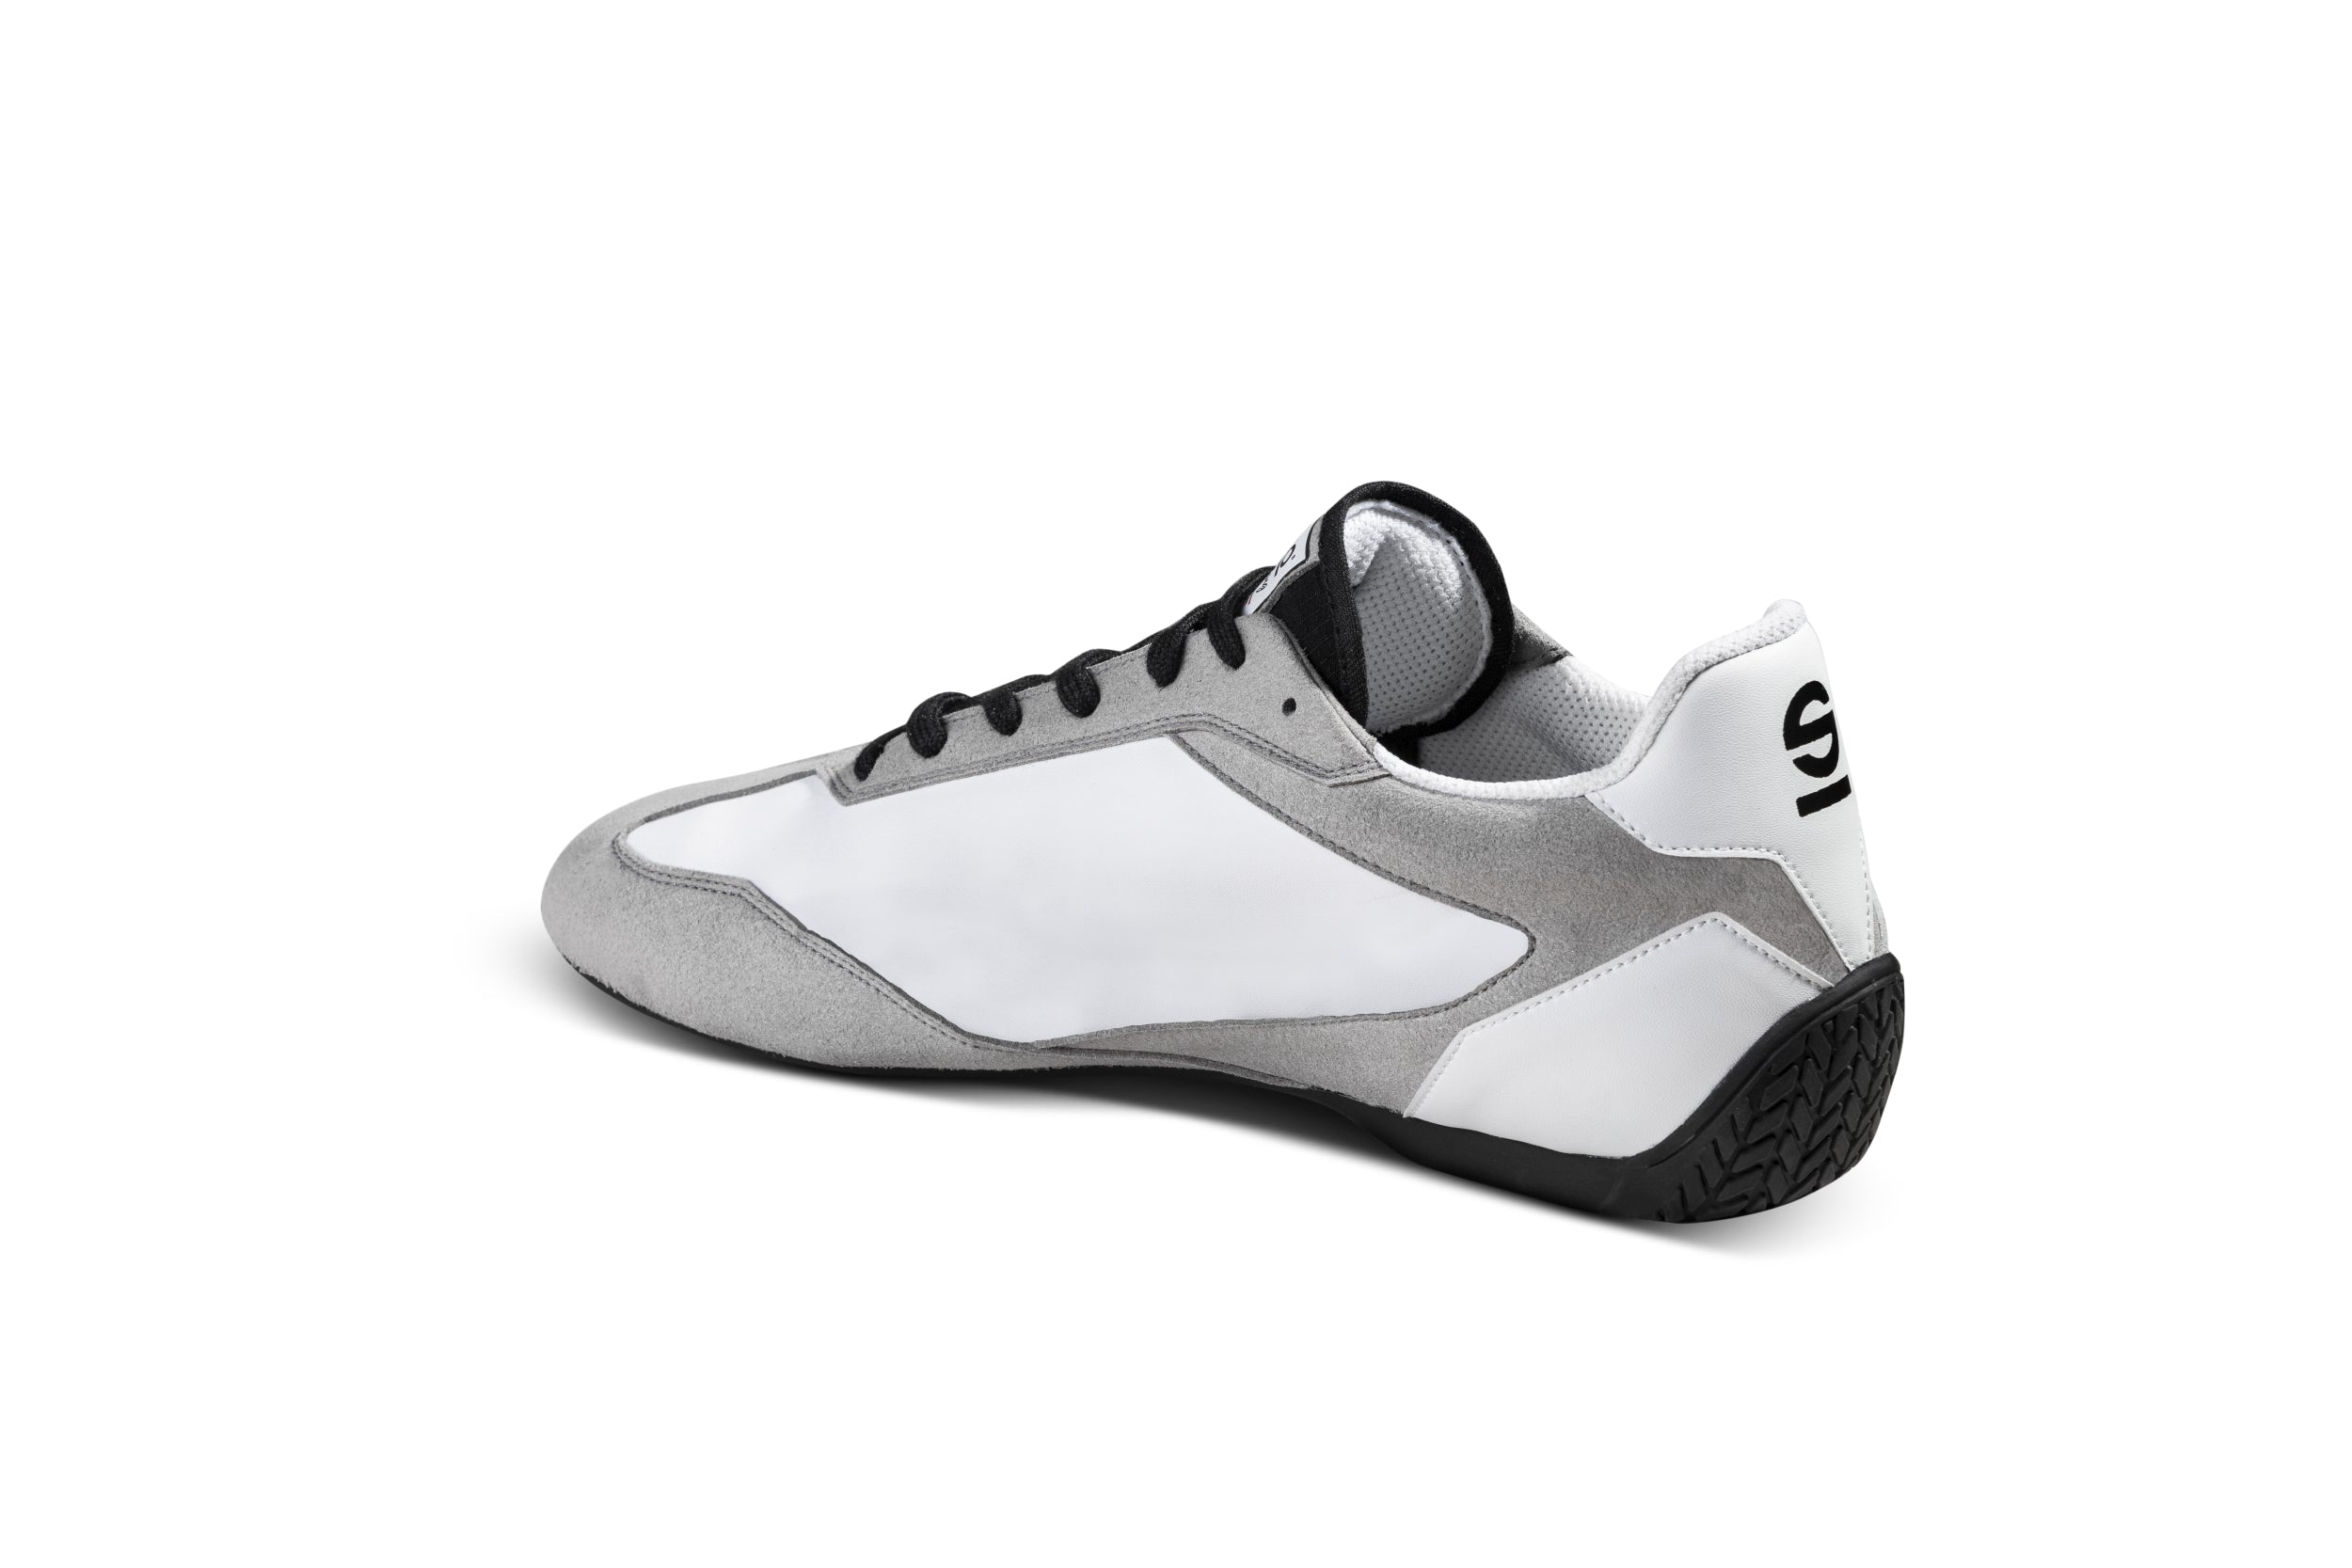 SPARCO 0012A747BINR S-DRIVE Shoes, white/black, size 47 Photo-1 